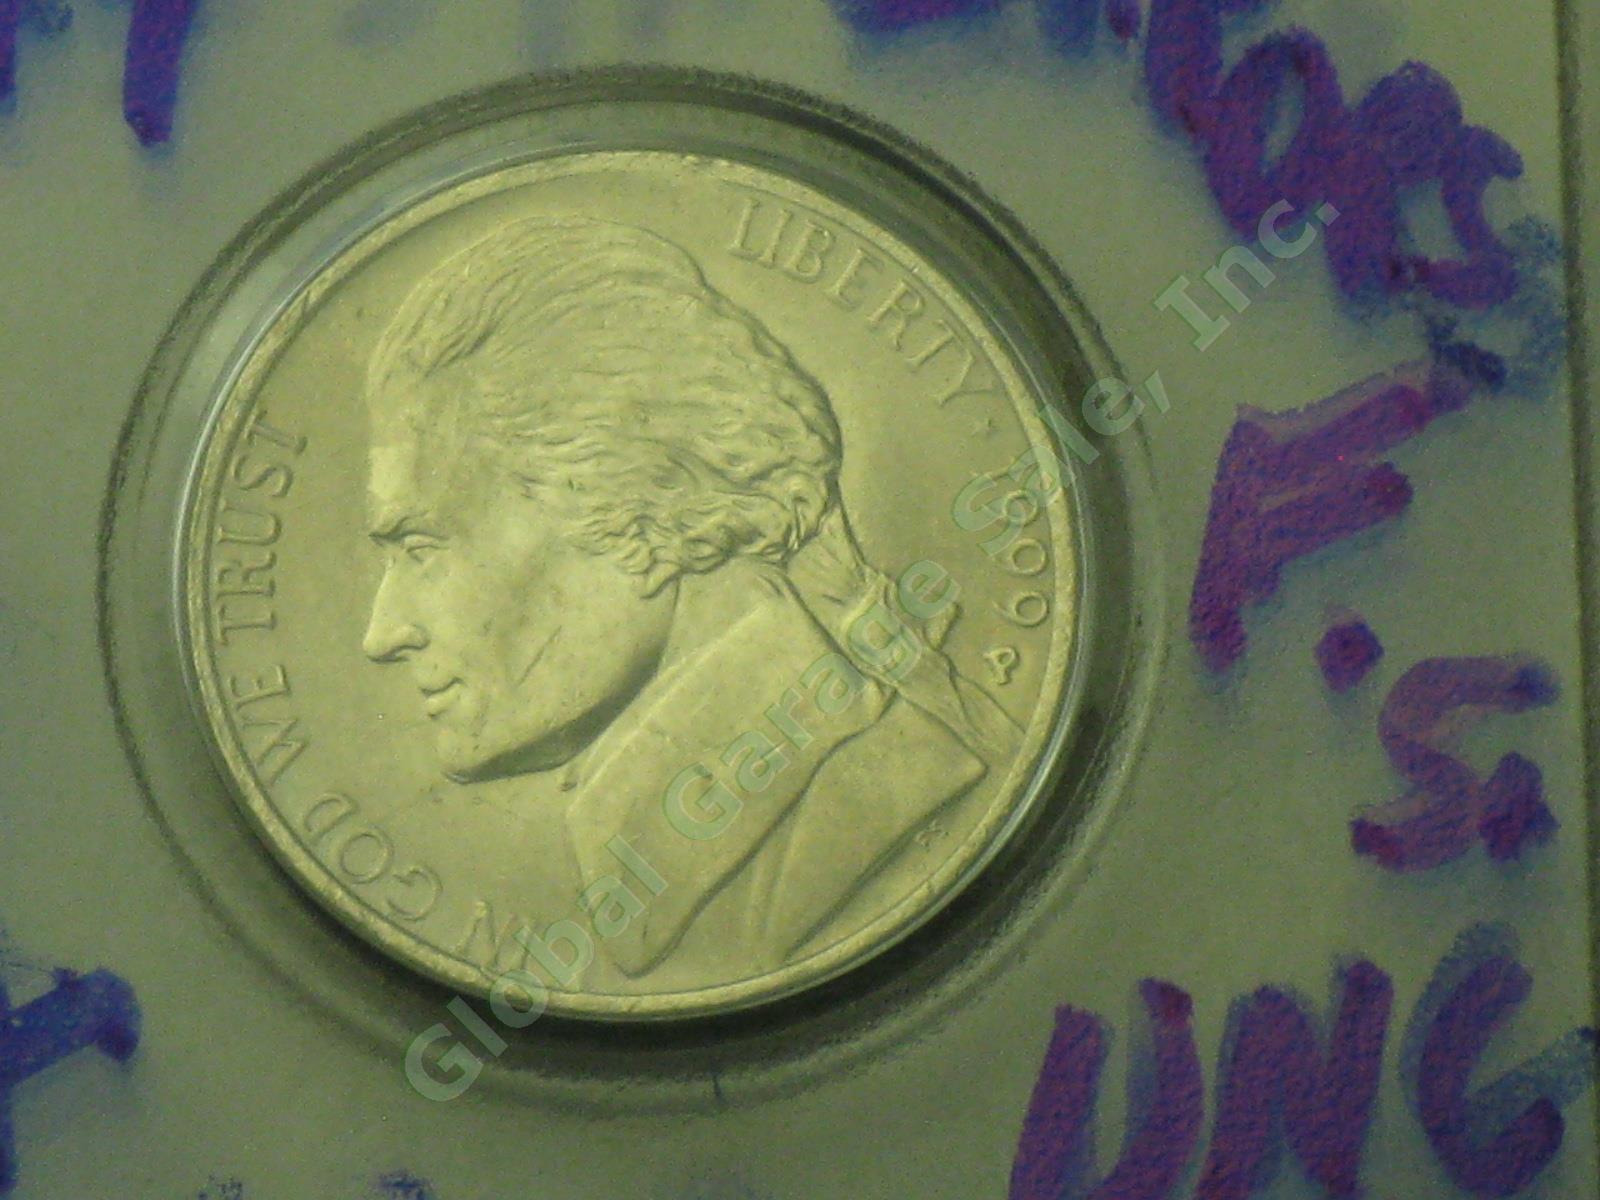 19 Jefferson Nickel Mint Errors Lot 1990s 2000s UNC Doubling Die Chips Blank ++ 11